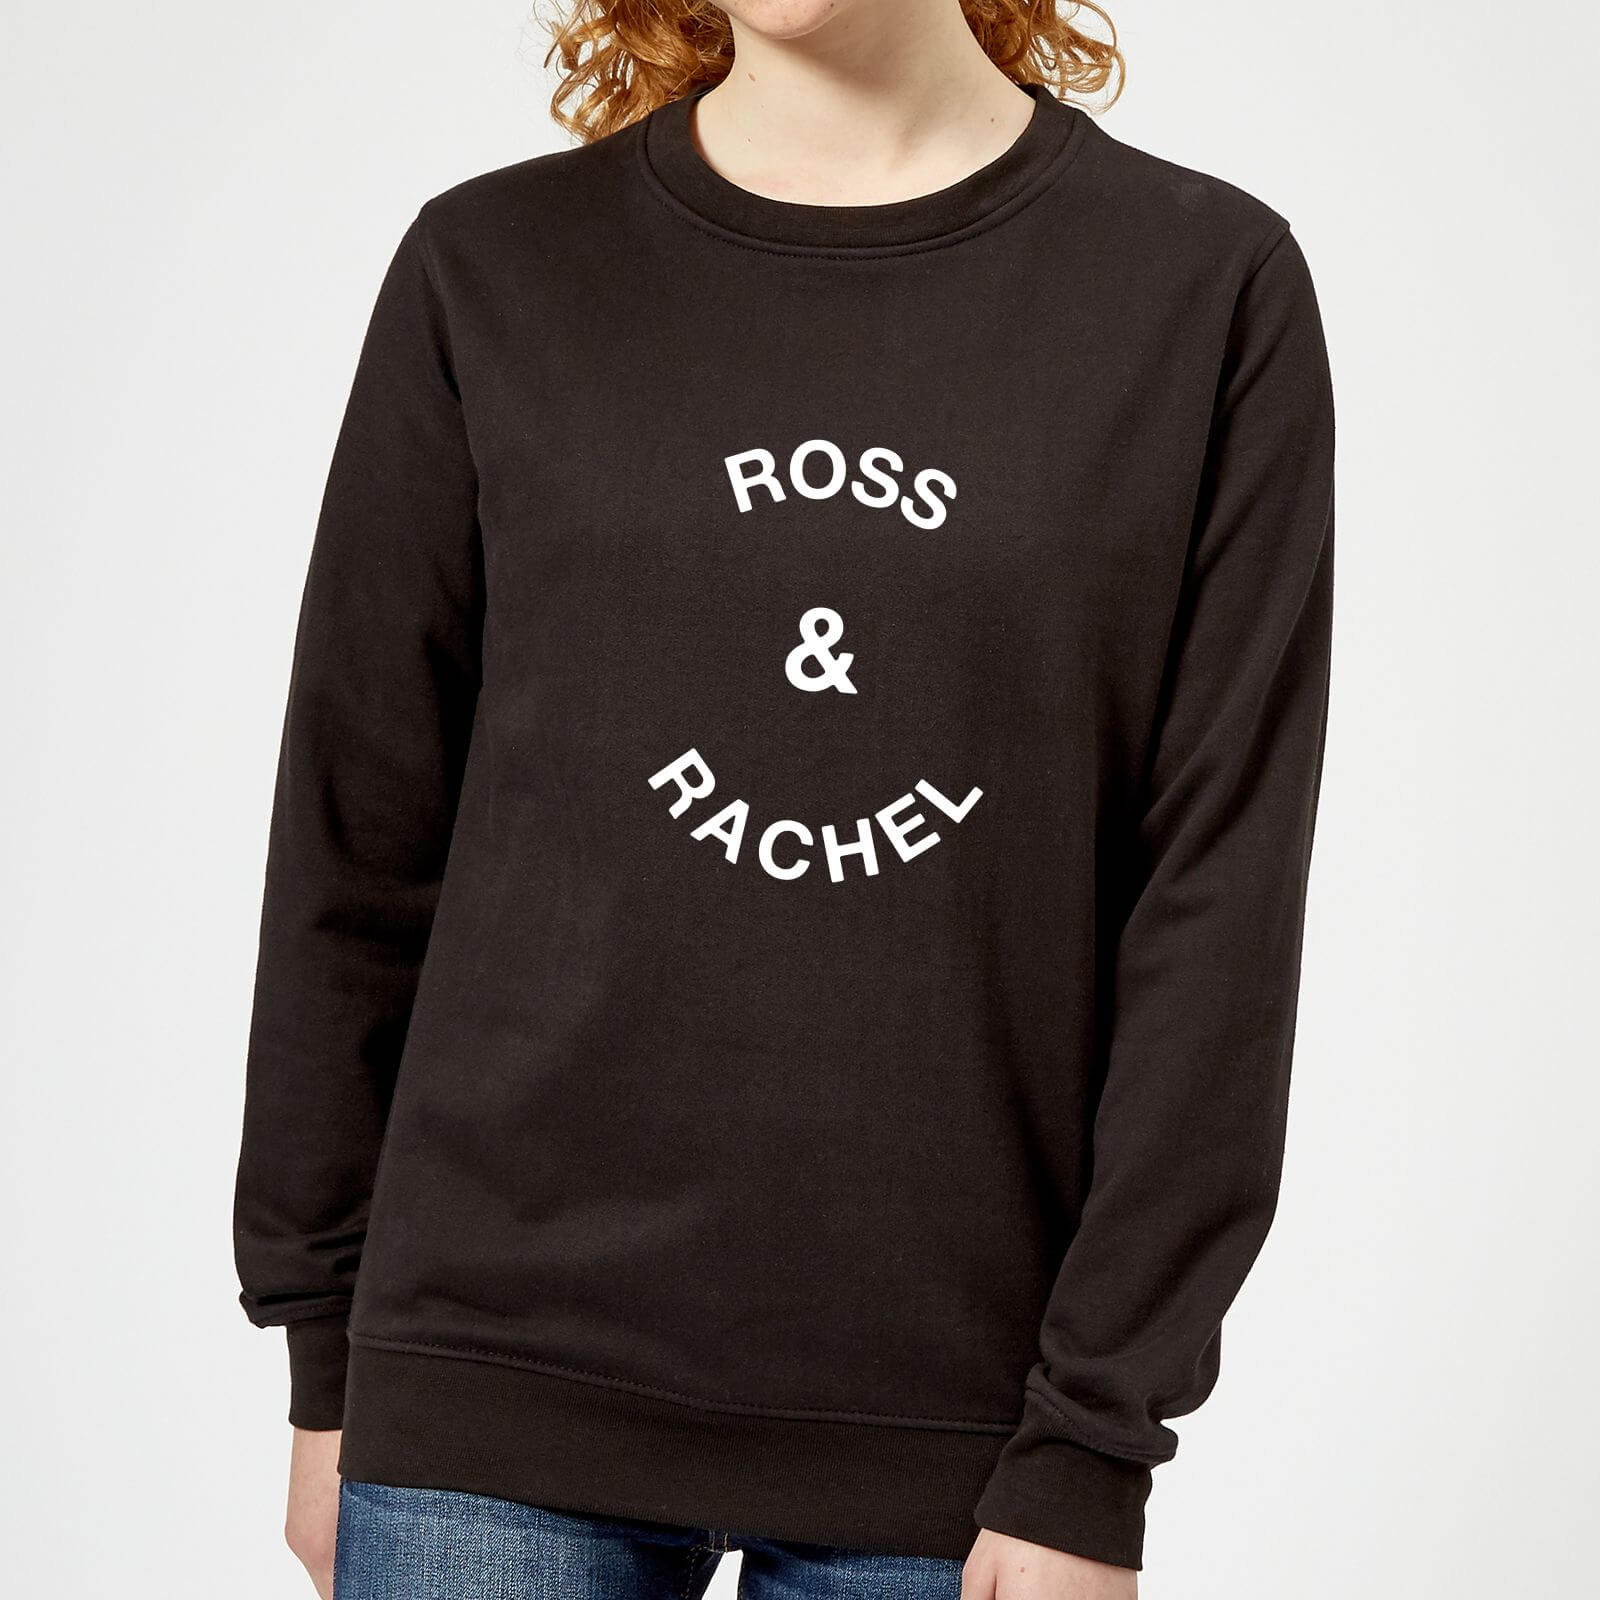 Ross & Rachel Women's Sweatshirt - Black - S - Black